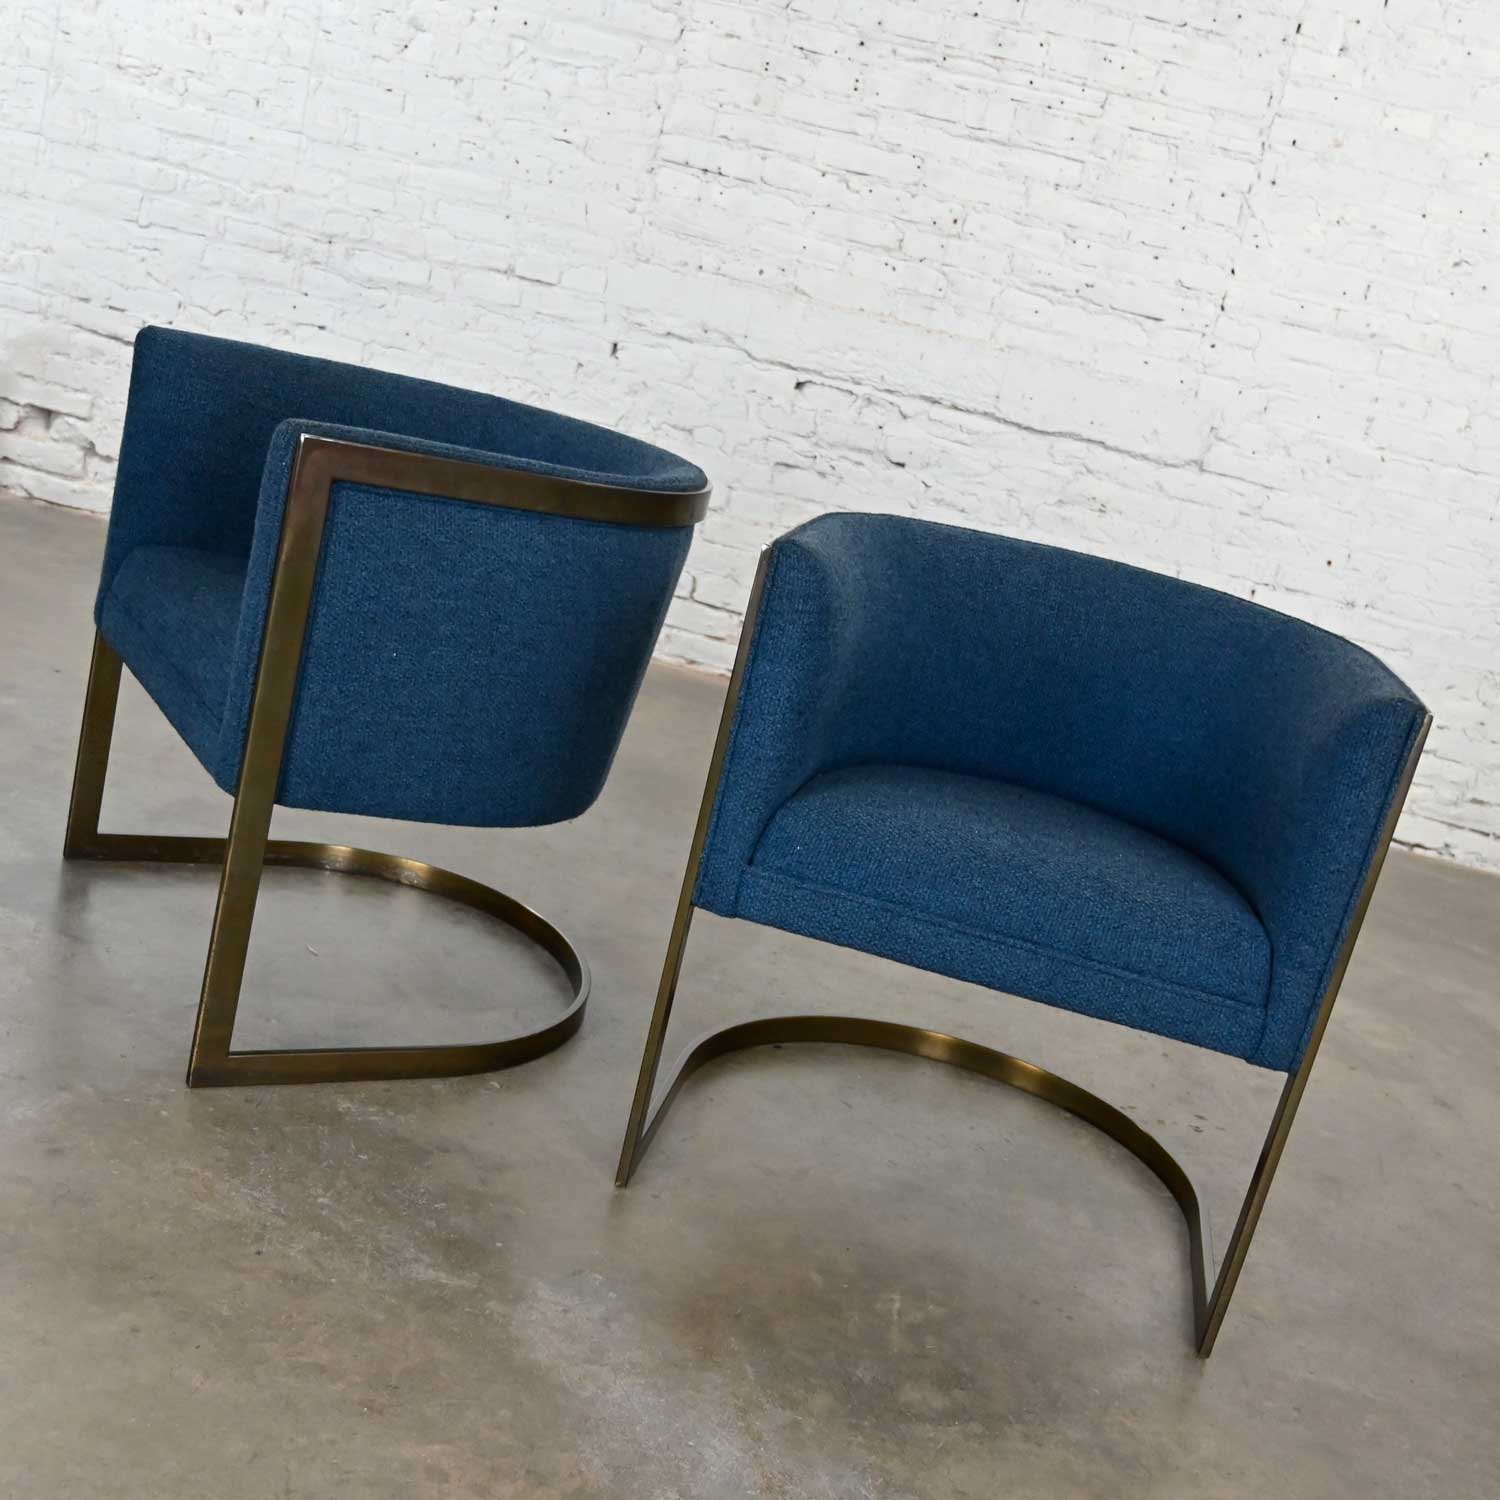 Metropolitan Furniture Modern Blue & Antique Brass Plate Tub Chairs by Jules Heumann a Pair